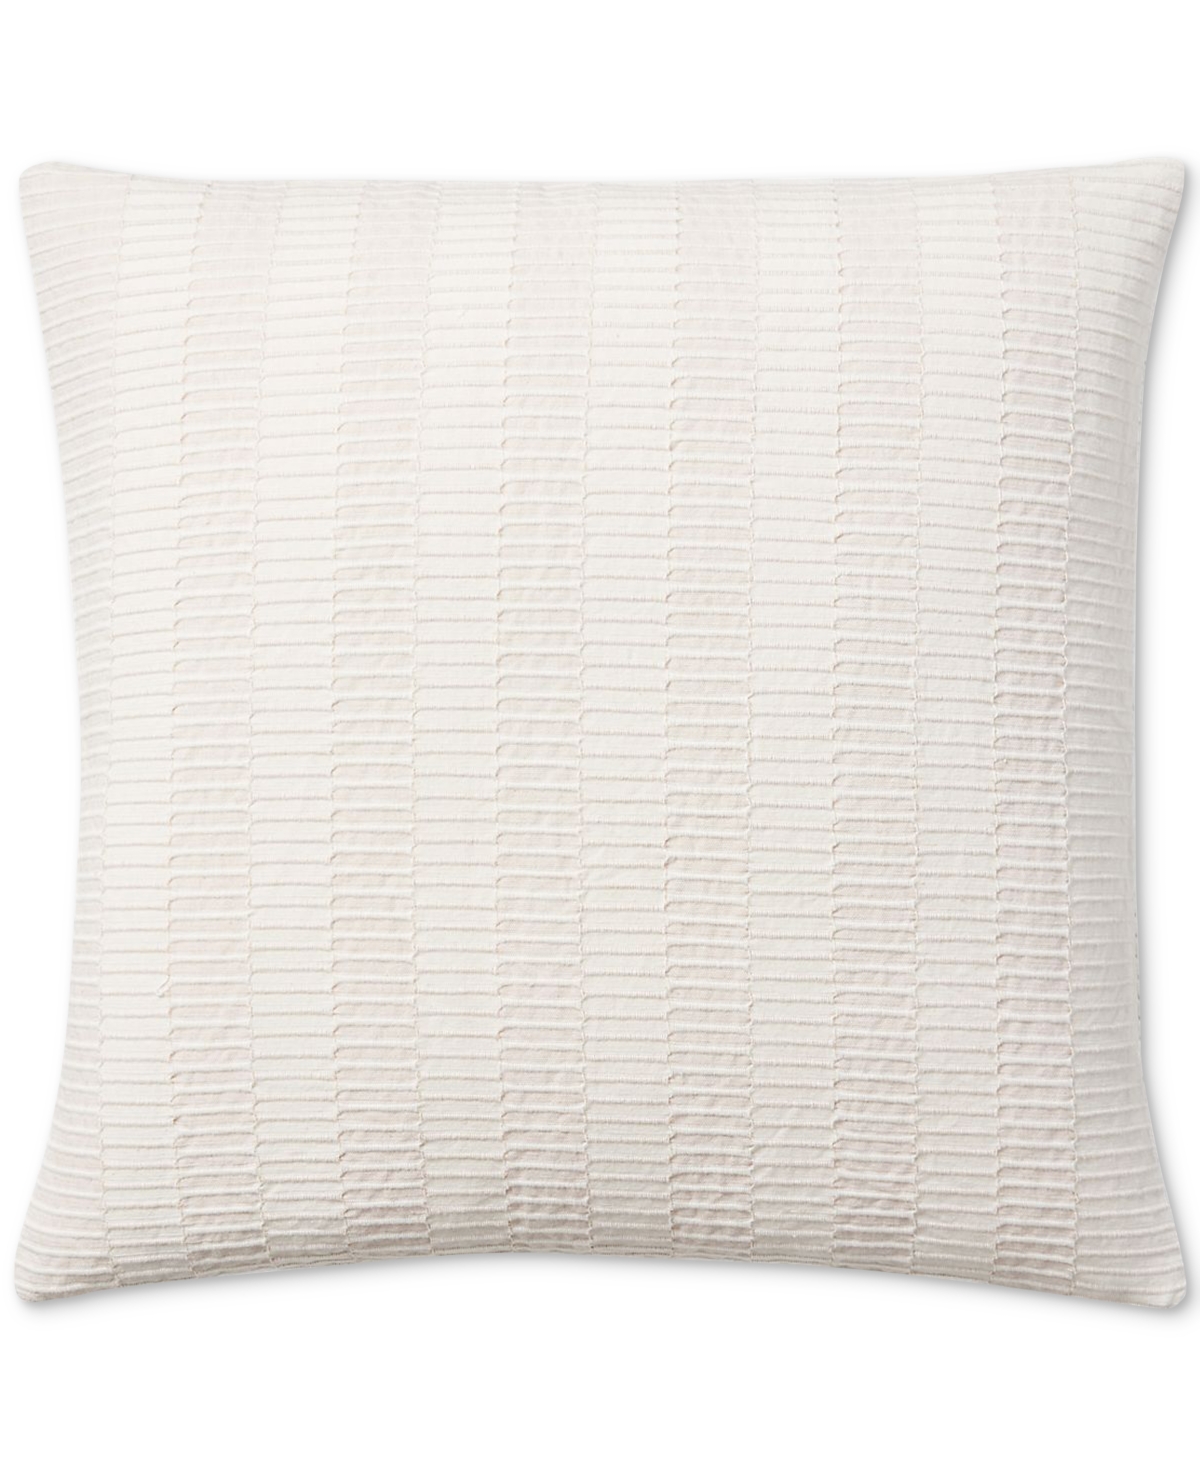 Lauren Ralph Lauren Melanie Textured Decorative Pillow, 20" X 20" In Cream